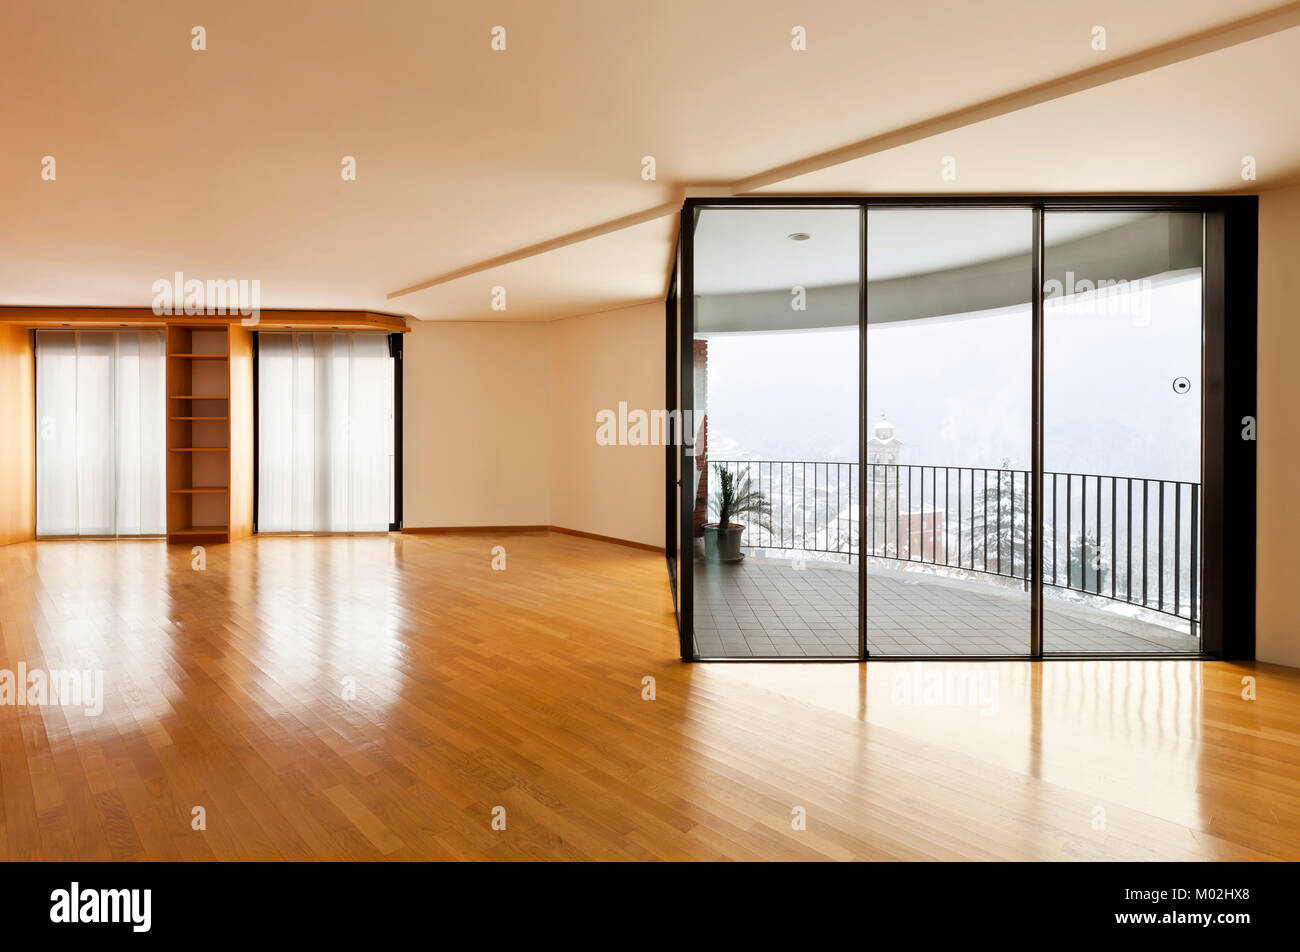 Bellissimo appartamento, interno, stanza vuota con windows Foto Stock